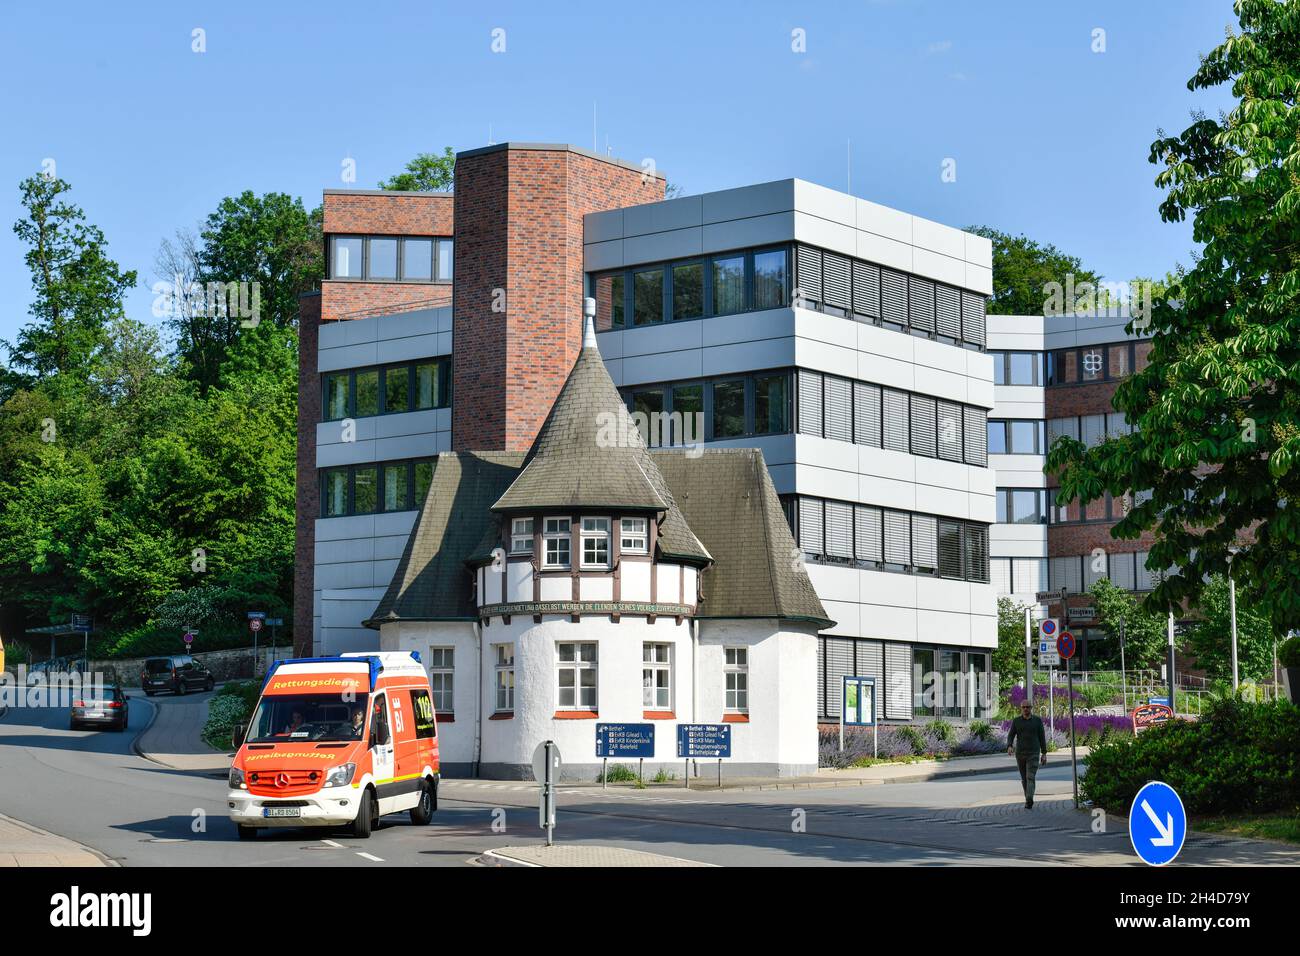 Hauptverwaltung, Von Bodelschwinghsche Stiftungen Bethel, Königsweg, Bielefeld, Nordrhein-Westfalen, Deutschland Stock Photo